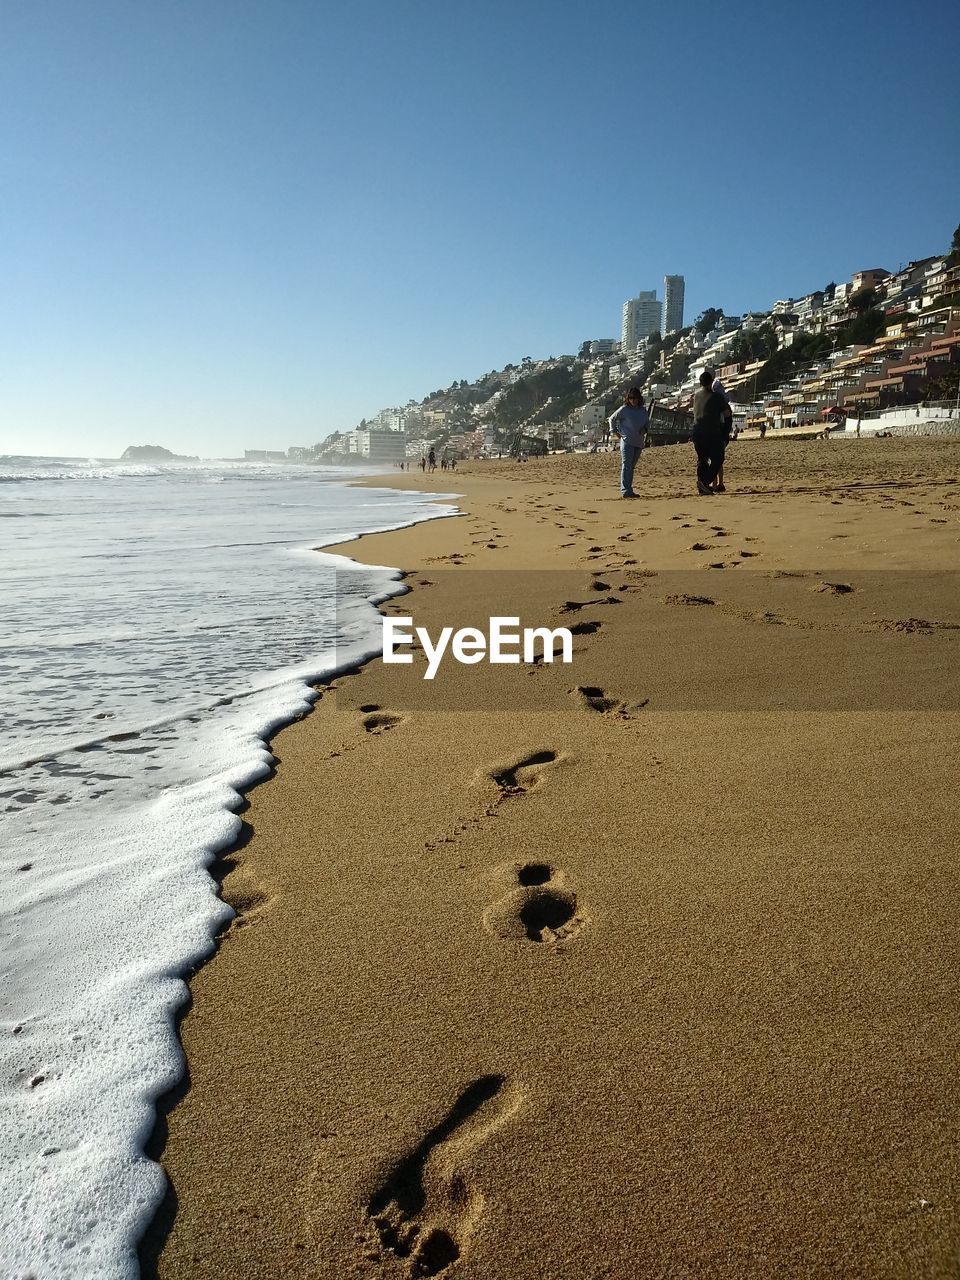 FOOTPRINTS ON SANDY BEACH AGAINST CLEAR SKY